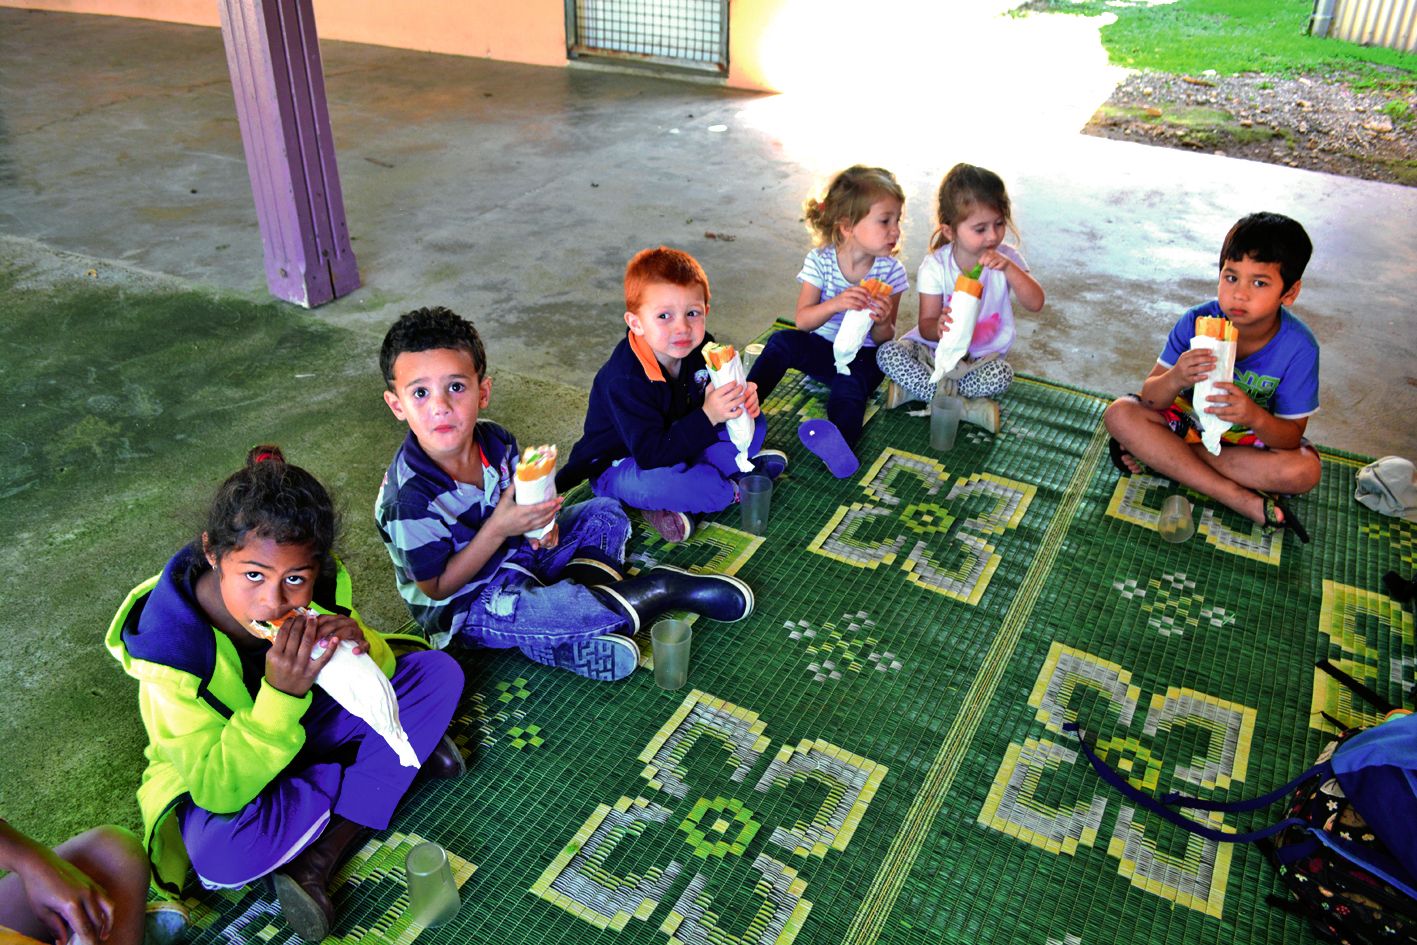 Les activités éducatives et ludiques demandent beaucoup d’énergie. Aussi, quand arrive l’heure du repas, les petits enfants affamés ne se font pas prier pour manger.